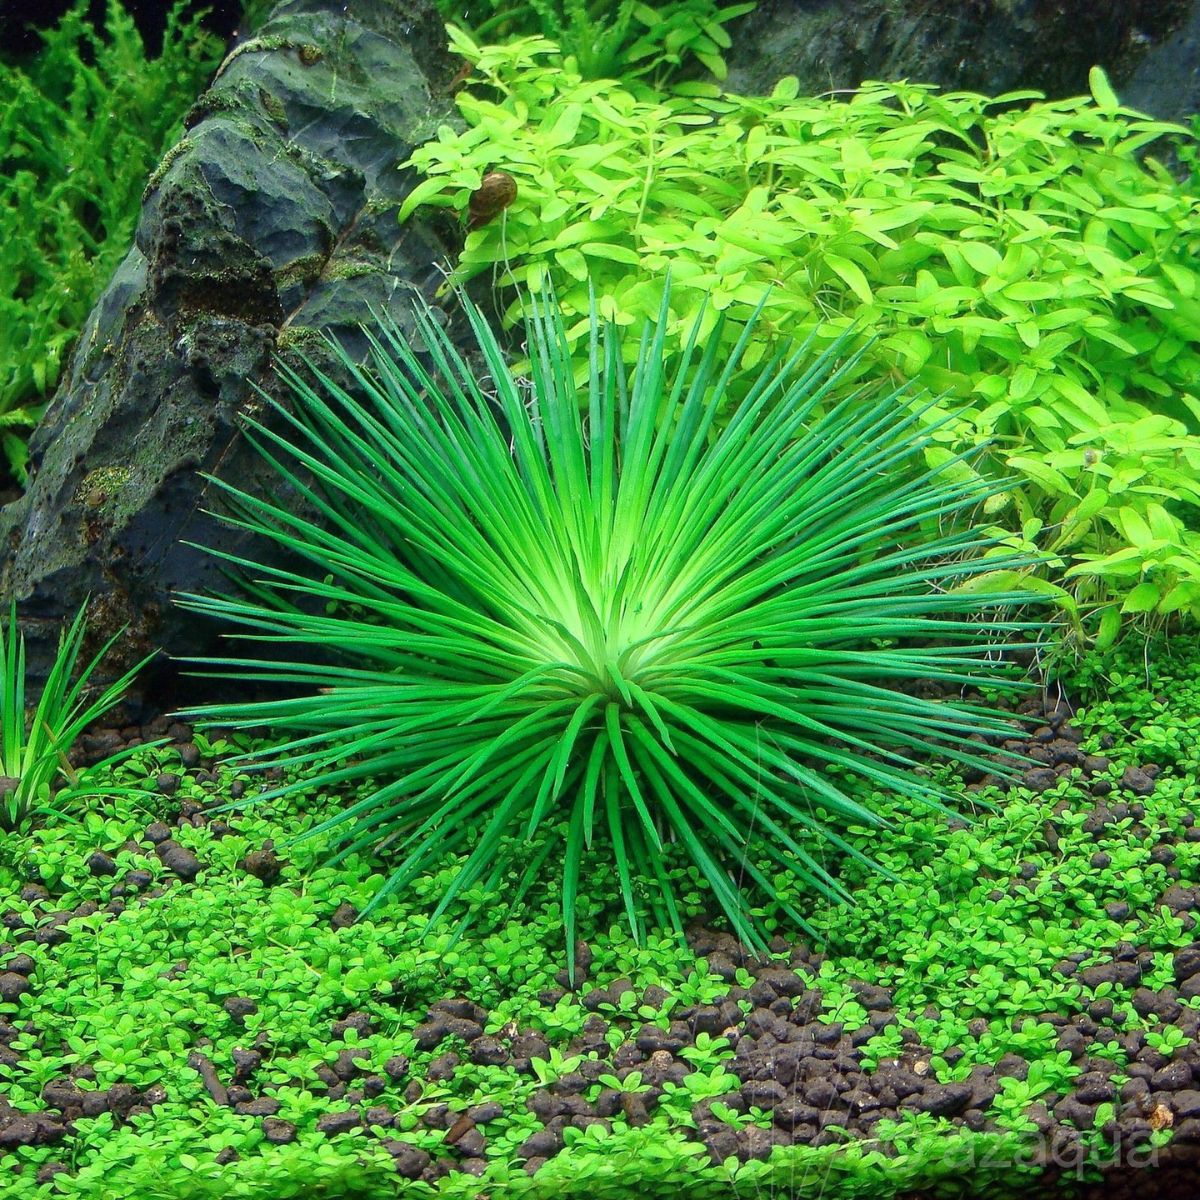 Eriocaulon green aquarium plant